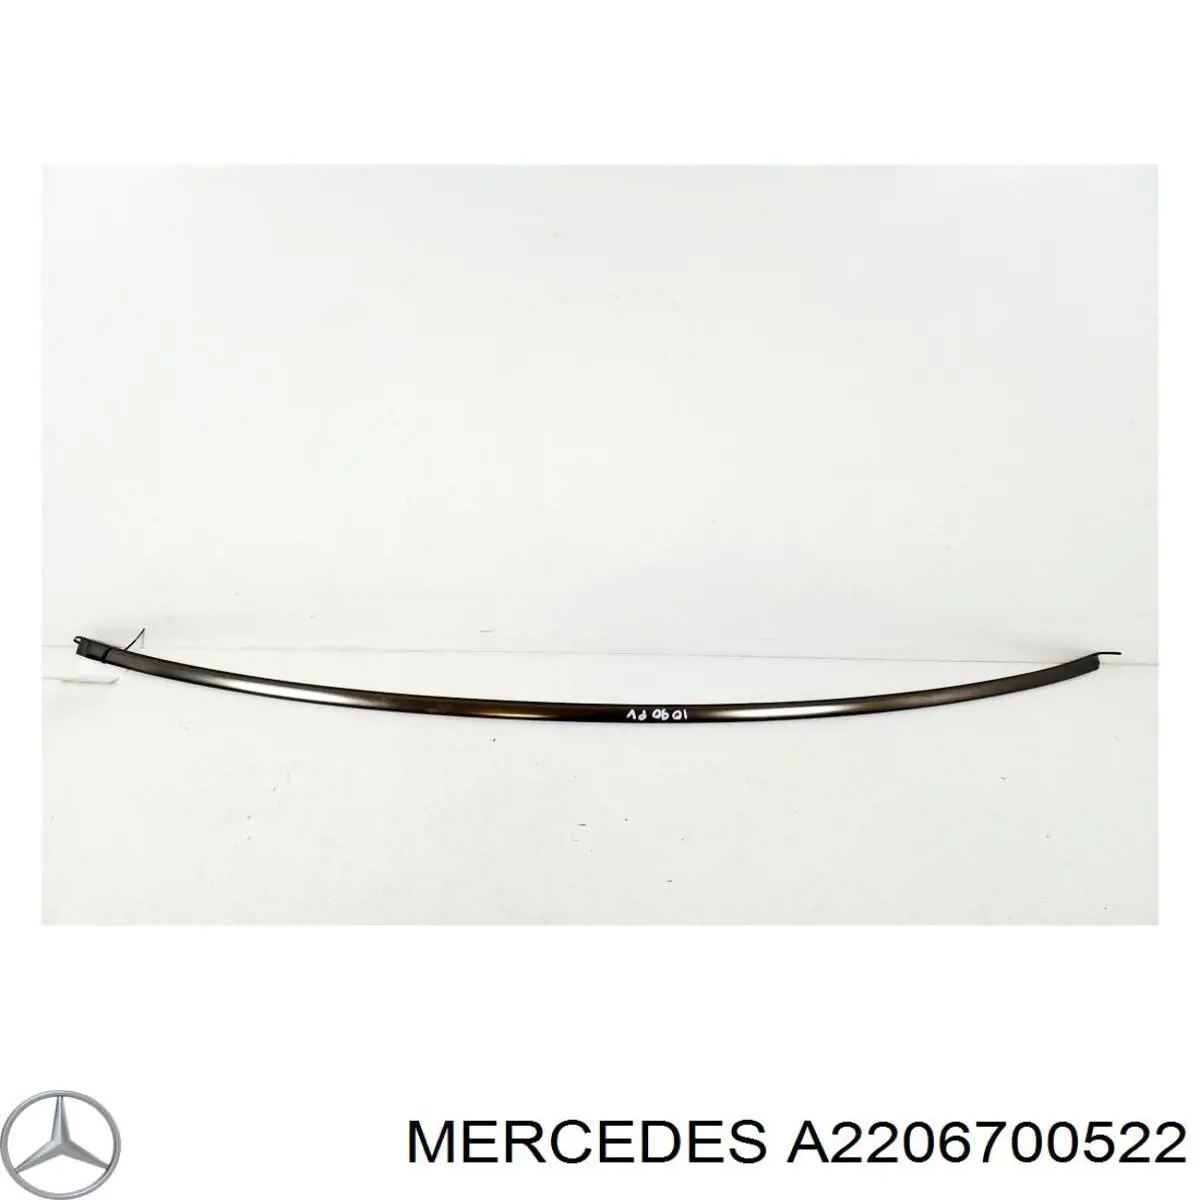 Moldura de parabrisas superior para Mercedes S (W220)